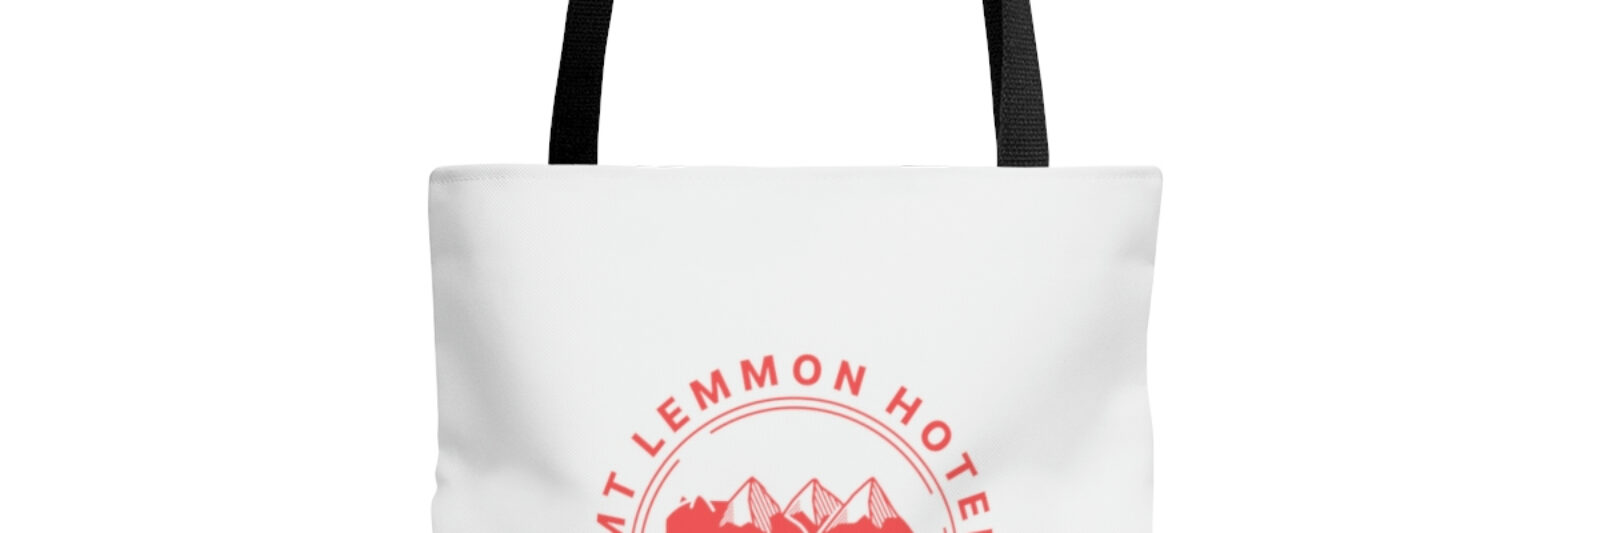 Mt Lemmon Hotel AOP Tote Bag red logo image